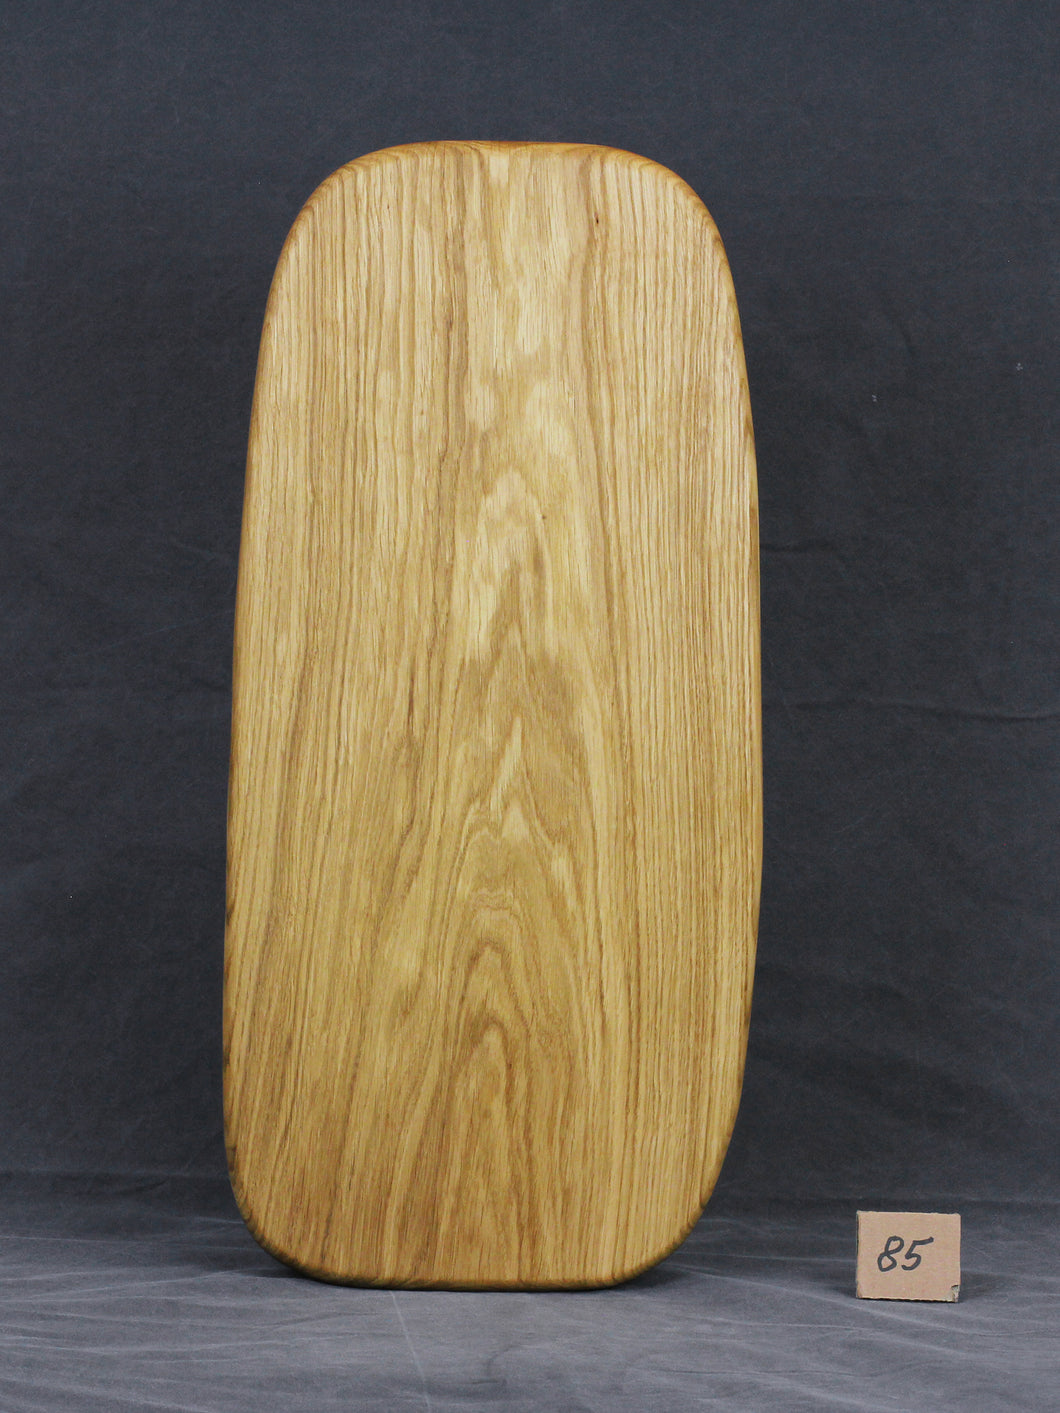 Brotzeitbrett, Servierbrett, Schneidebrett, Cuttingboard, Charcuterie Board. No. 85 - ca. 60 cm. Aus einem Stück Eiche - handgefertigt.